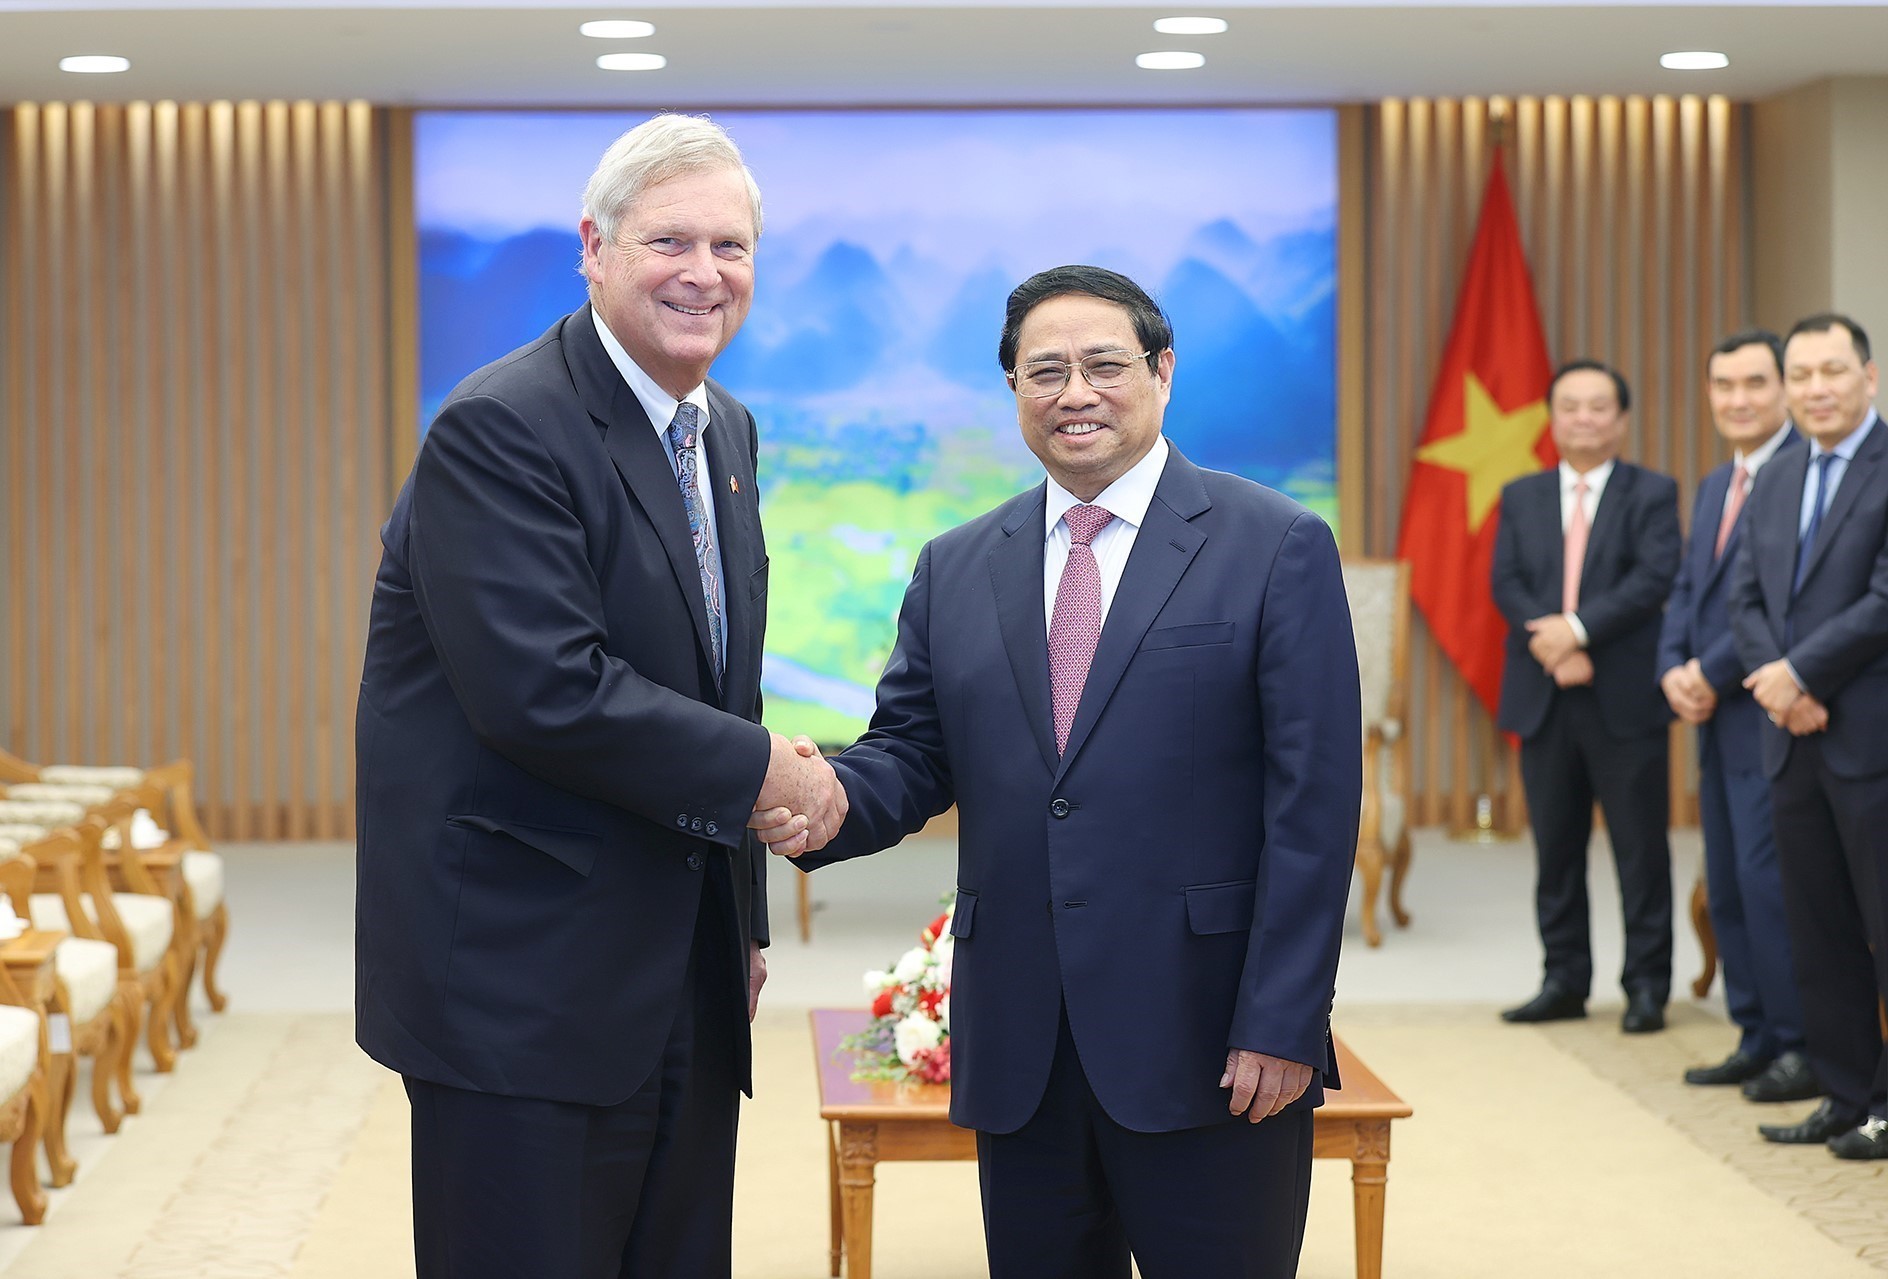 Hoa Kỳ sẽ hỗ trợ Việt Nam xây dựng 1 trung tâm chiếu xạ nông sản tại miền Bắc - Ảnh 1.